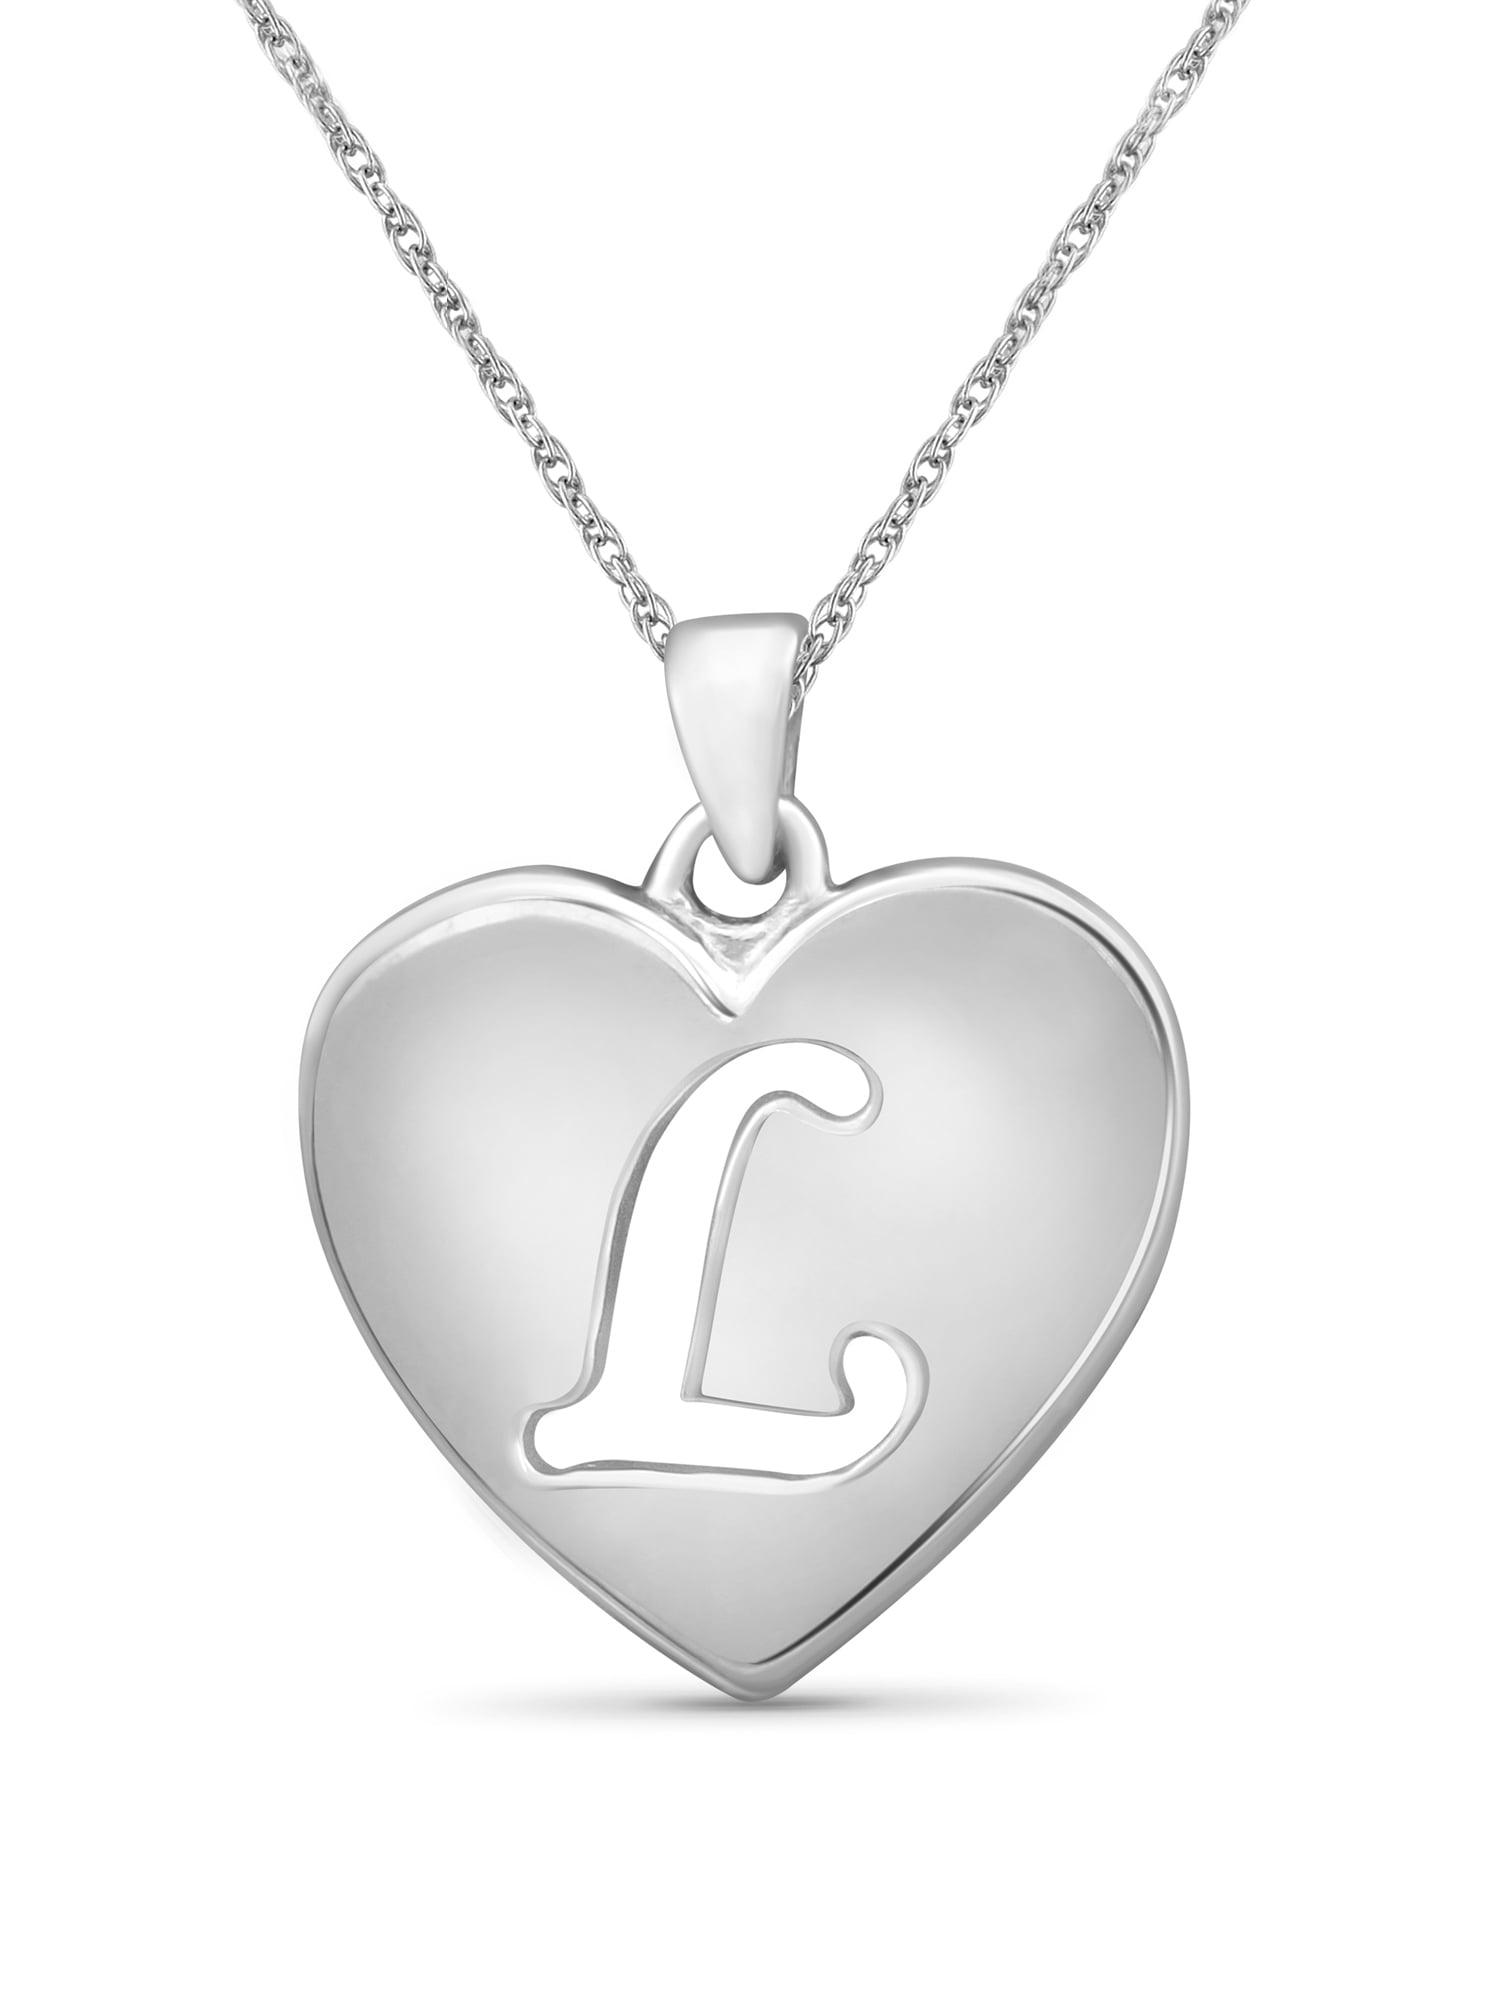 Beautiful Heart Charm Bracelet 925 Sterling Silver Women Girls Jewelry Gift  UK